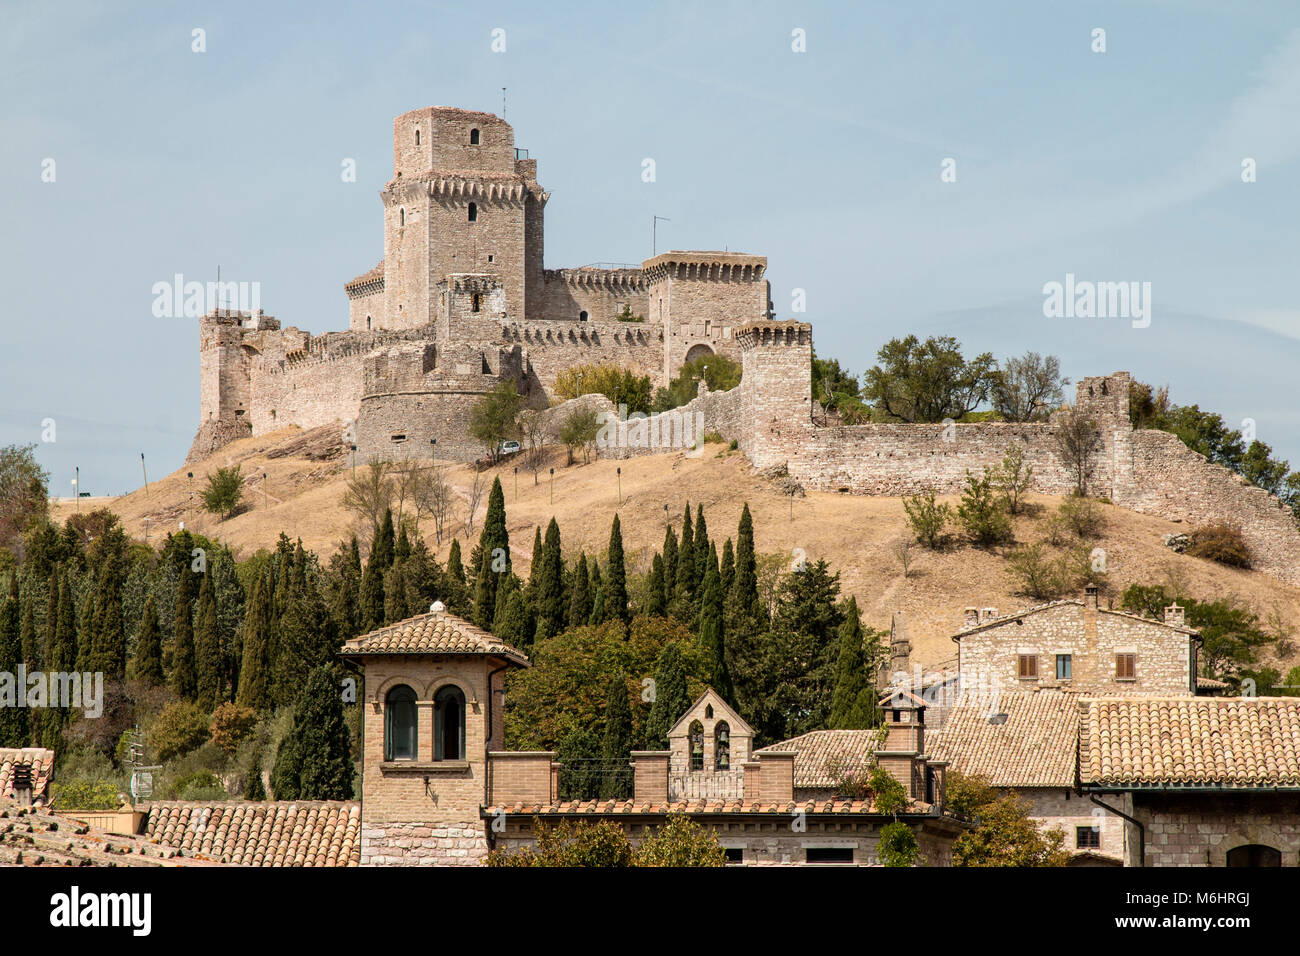 La forteresse Maggiore domine de plus de huit cents ans, la citadelle d'assise et la vallée de l'Tescio, constituant le plus précieux de f Banque D'Images